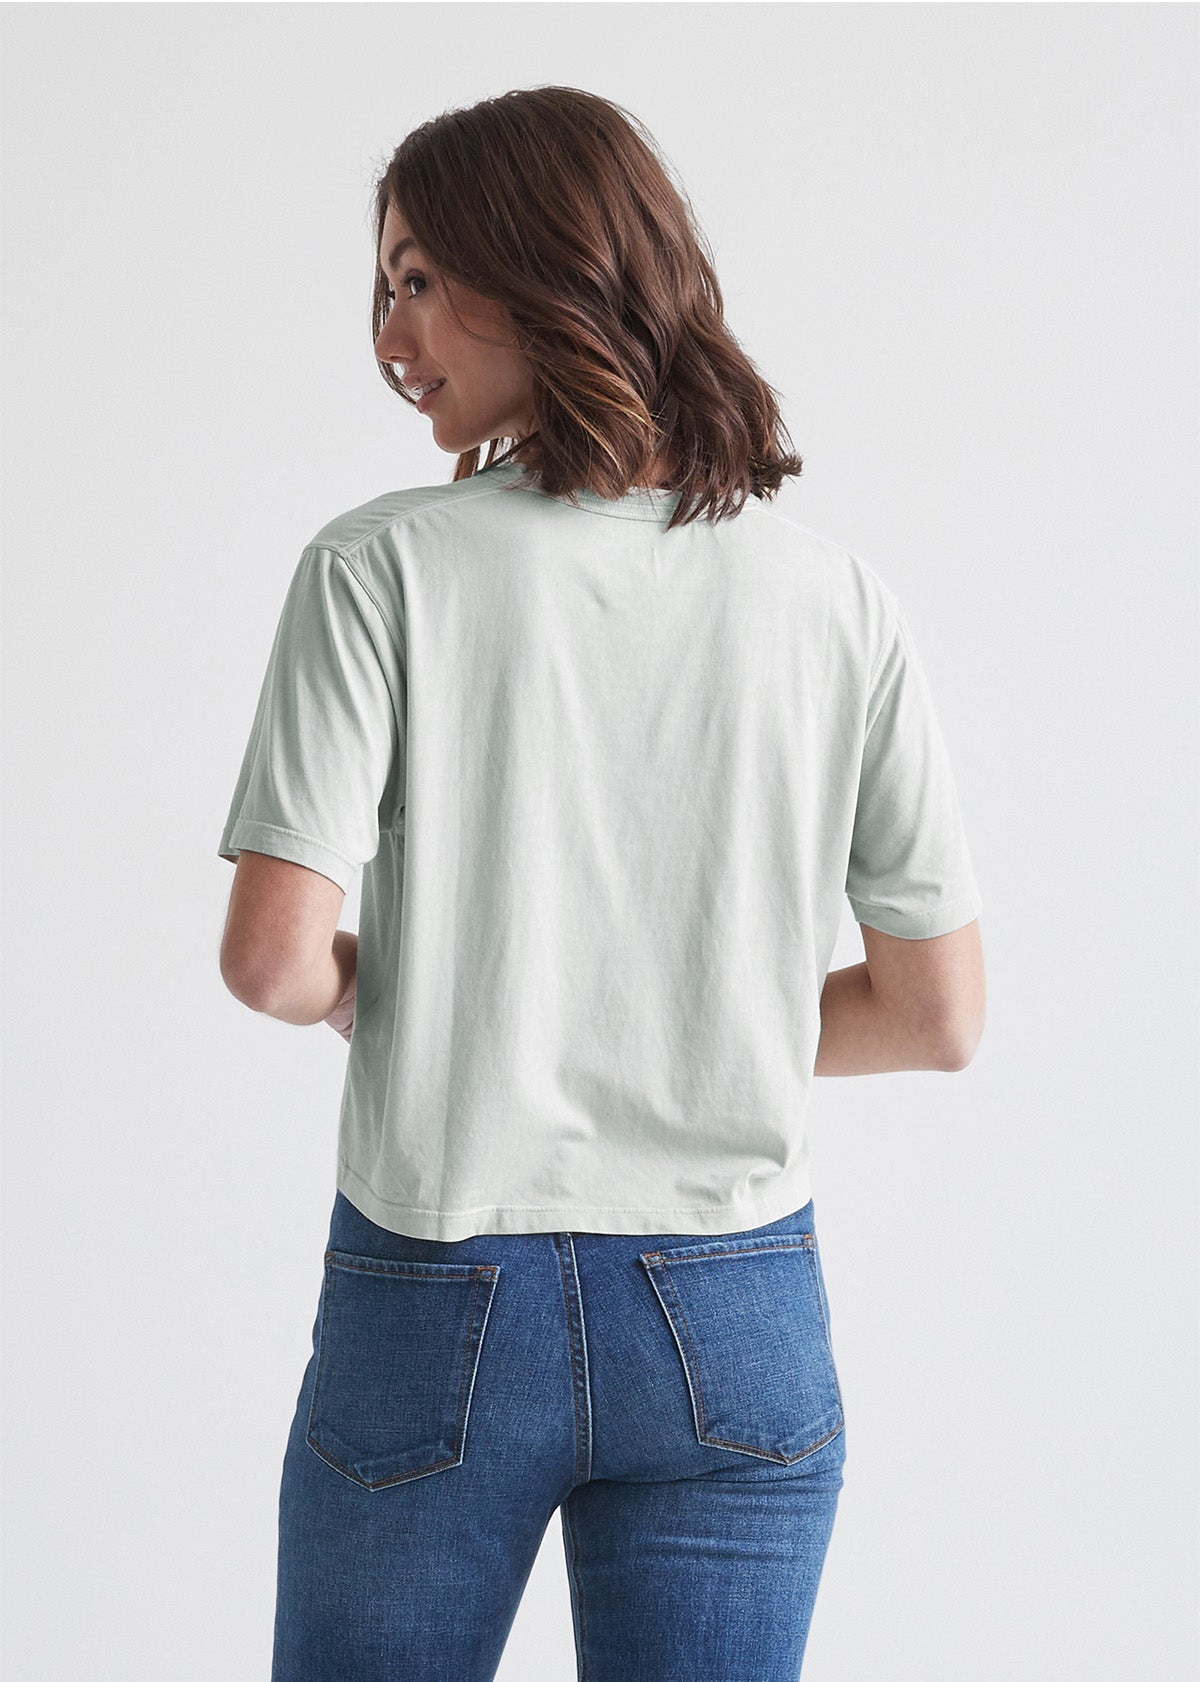 Women's Light Green Soft Lightweight Crop T-Shirt Back